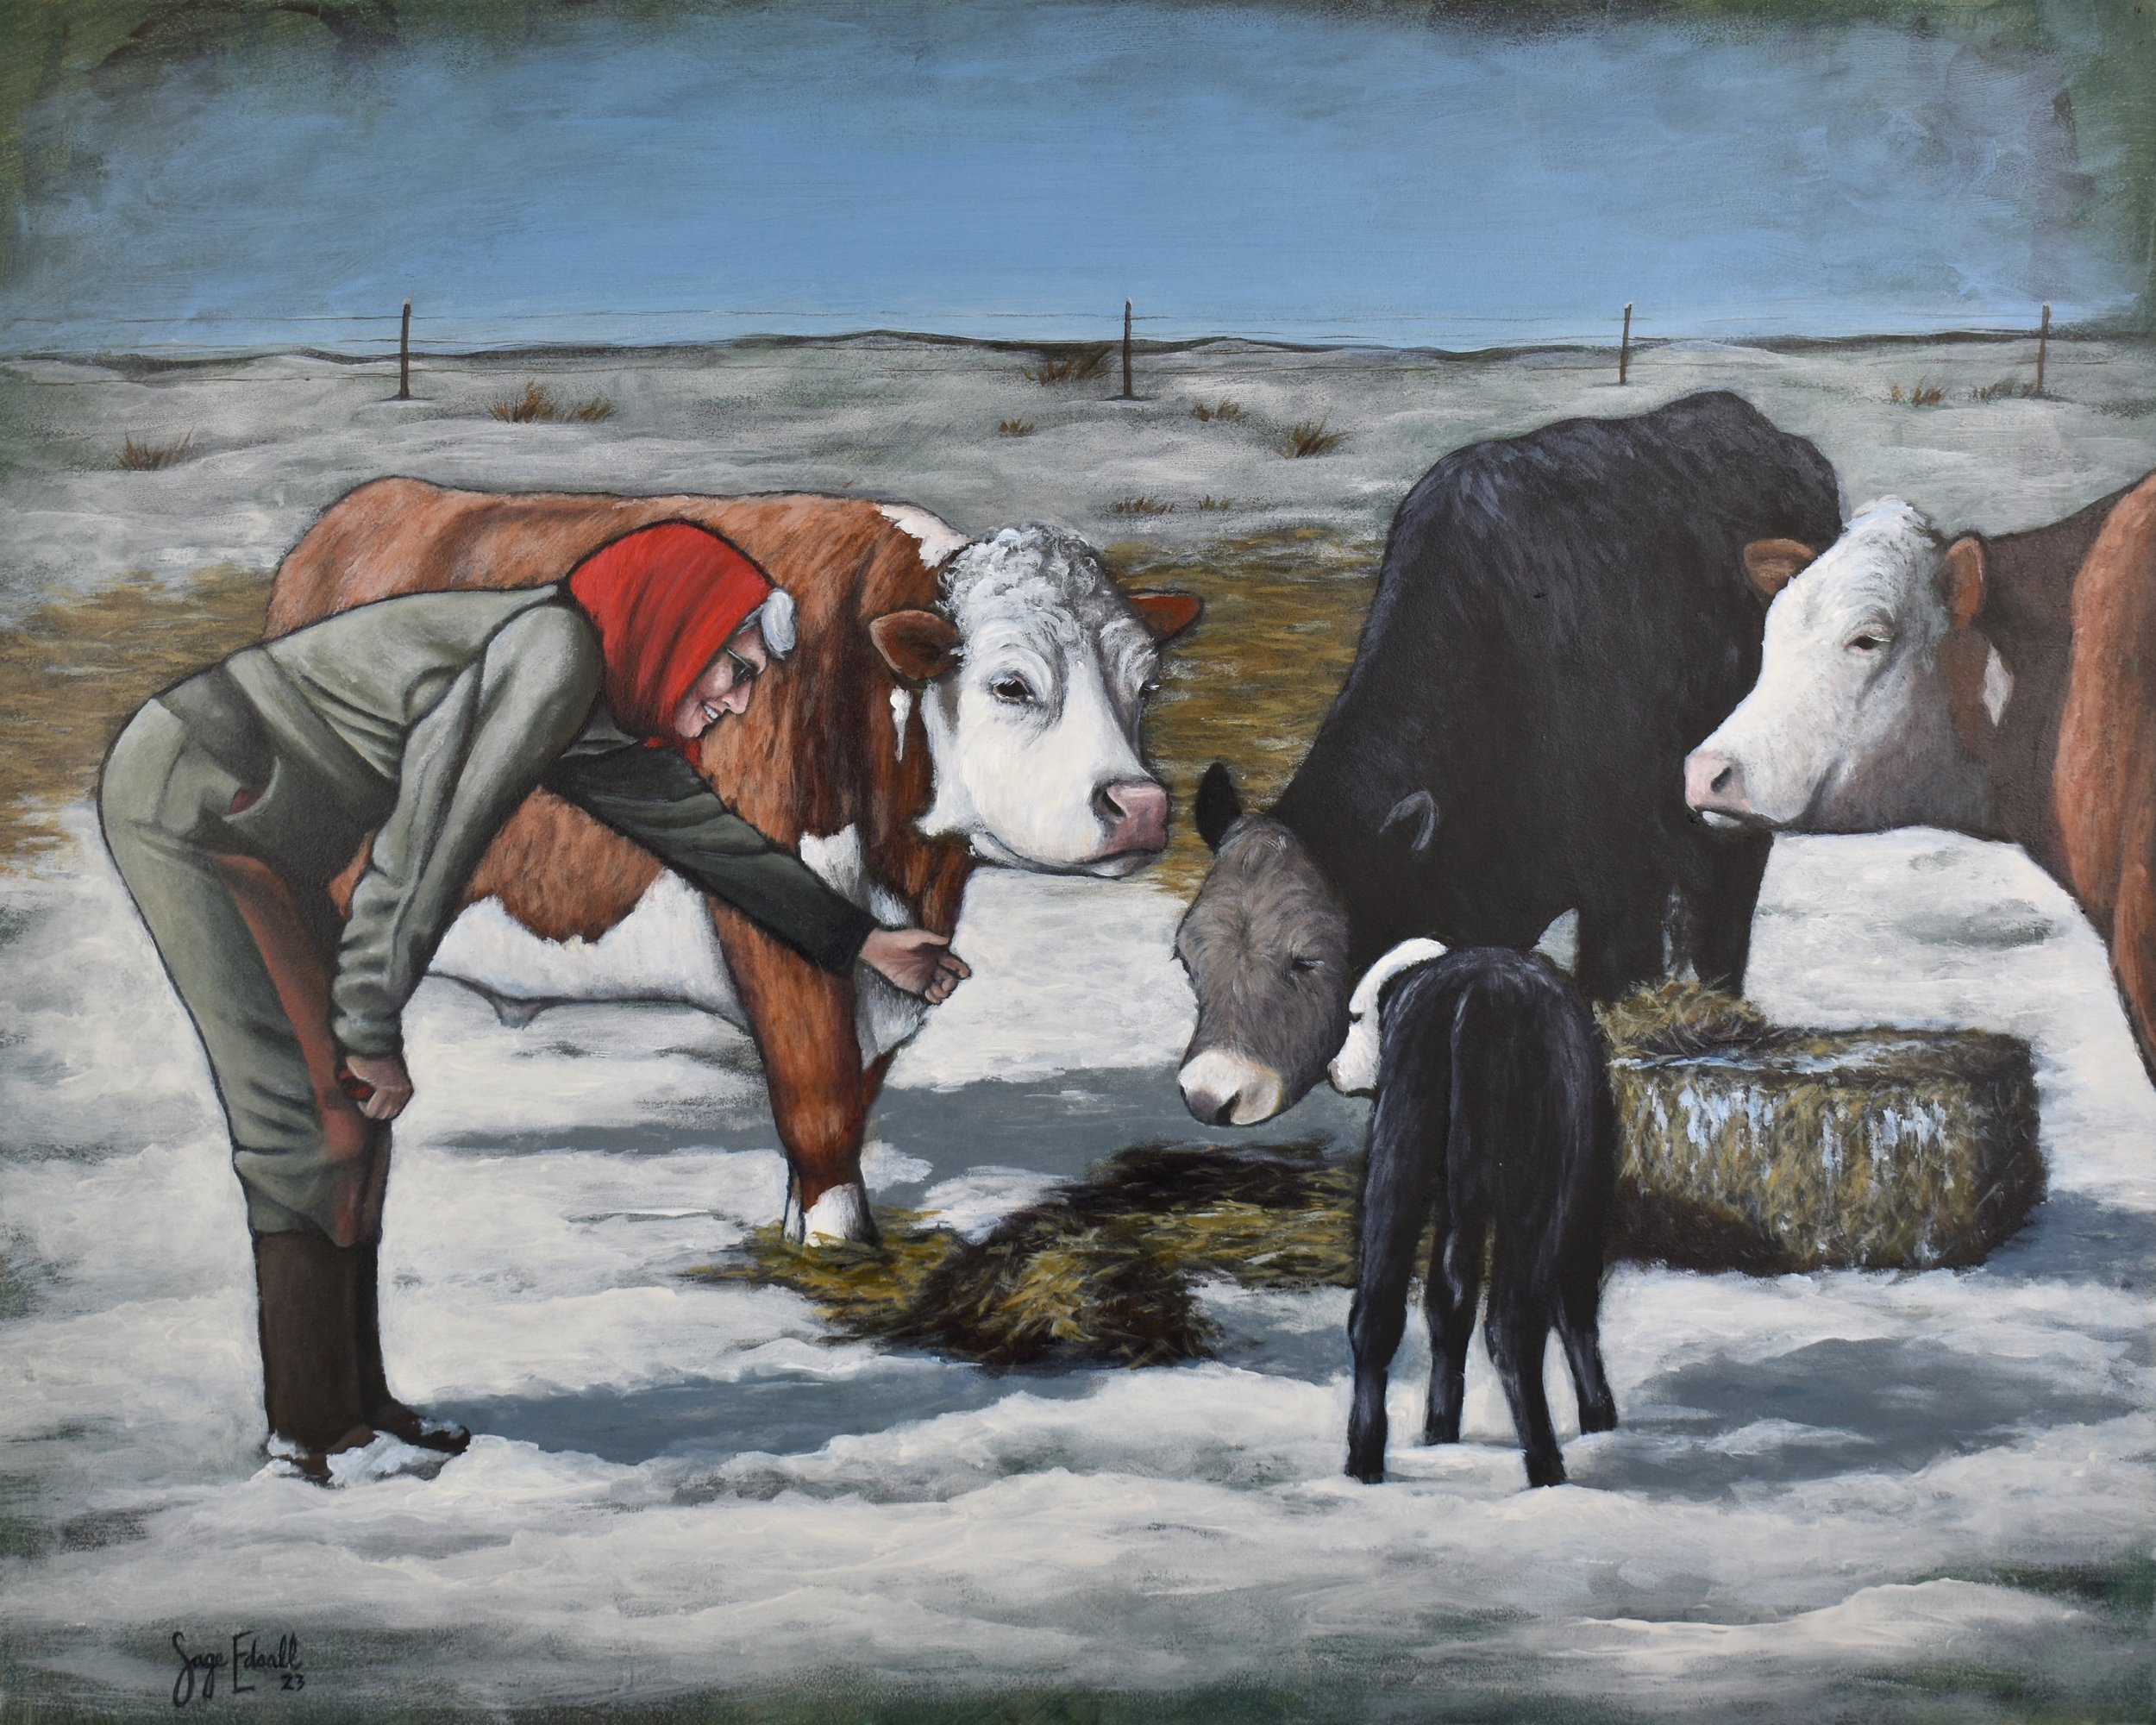 Sage Edsall, "Grandma and the Cows"